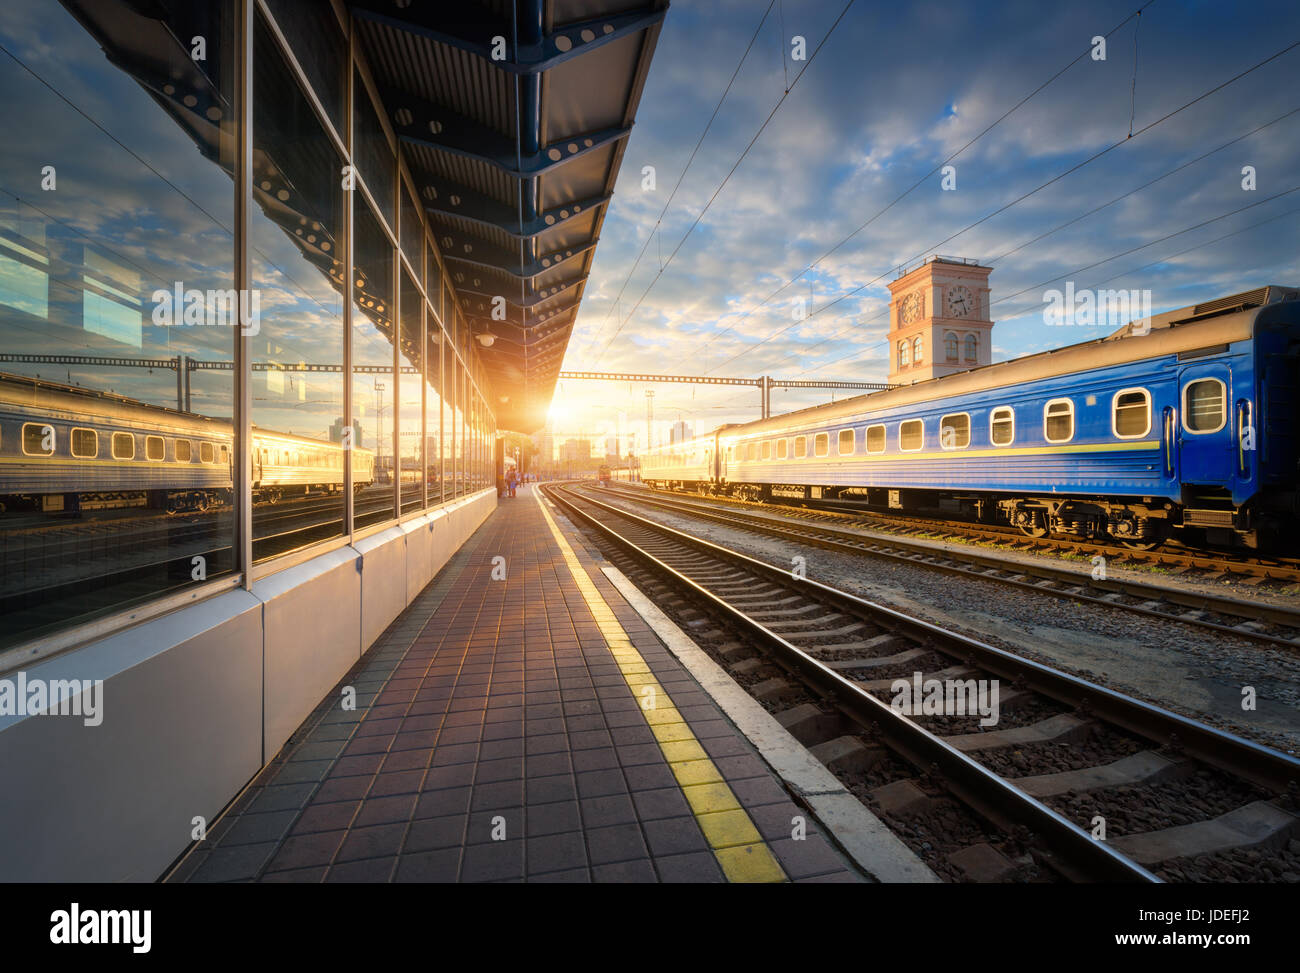 Bella blu treni passeggeri presso la stazione ferroviaria al tramonto. Vista industriale con il moderno treno, ferrovia, piattaforma ferroviaria, edifici e cielo blu Foto Stock